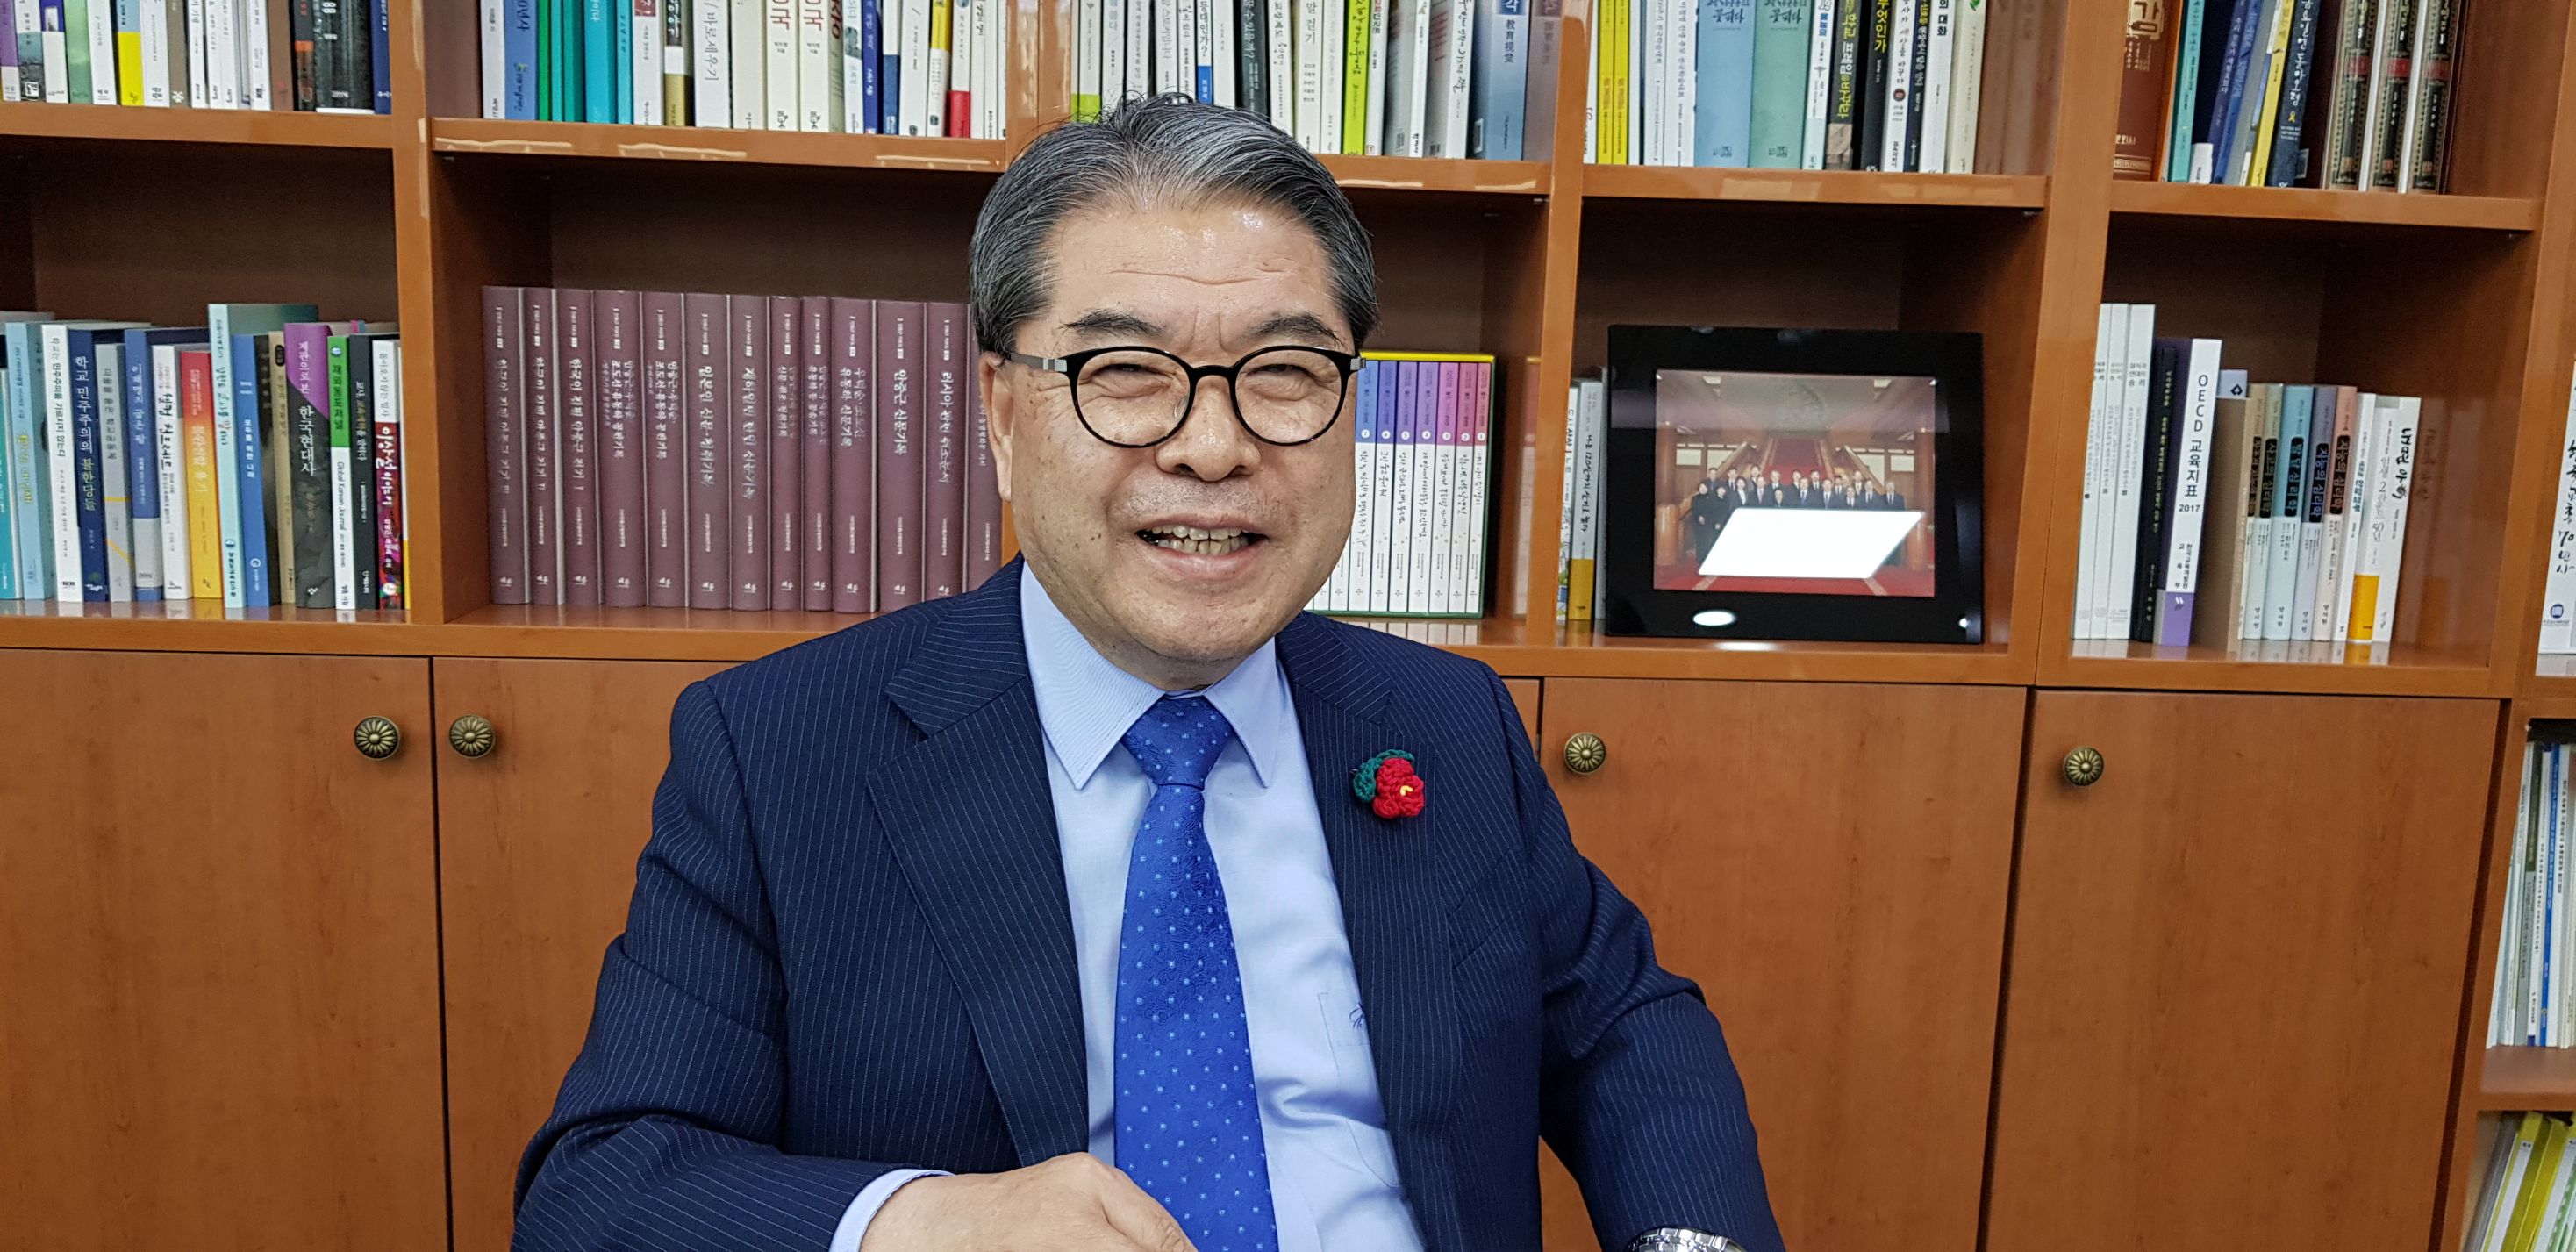 【南北首脳会談緊急企画】韓国統一部元長官が語る北朝鮮の非核化、平和構築